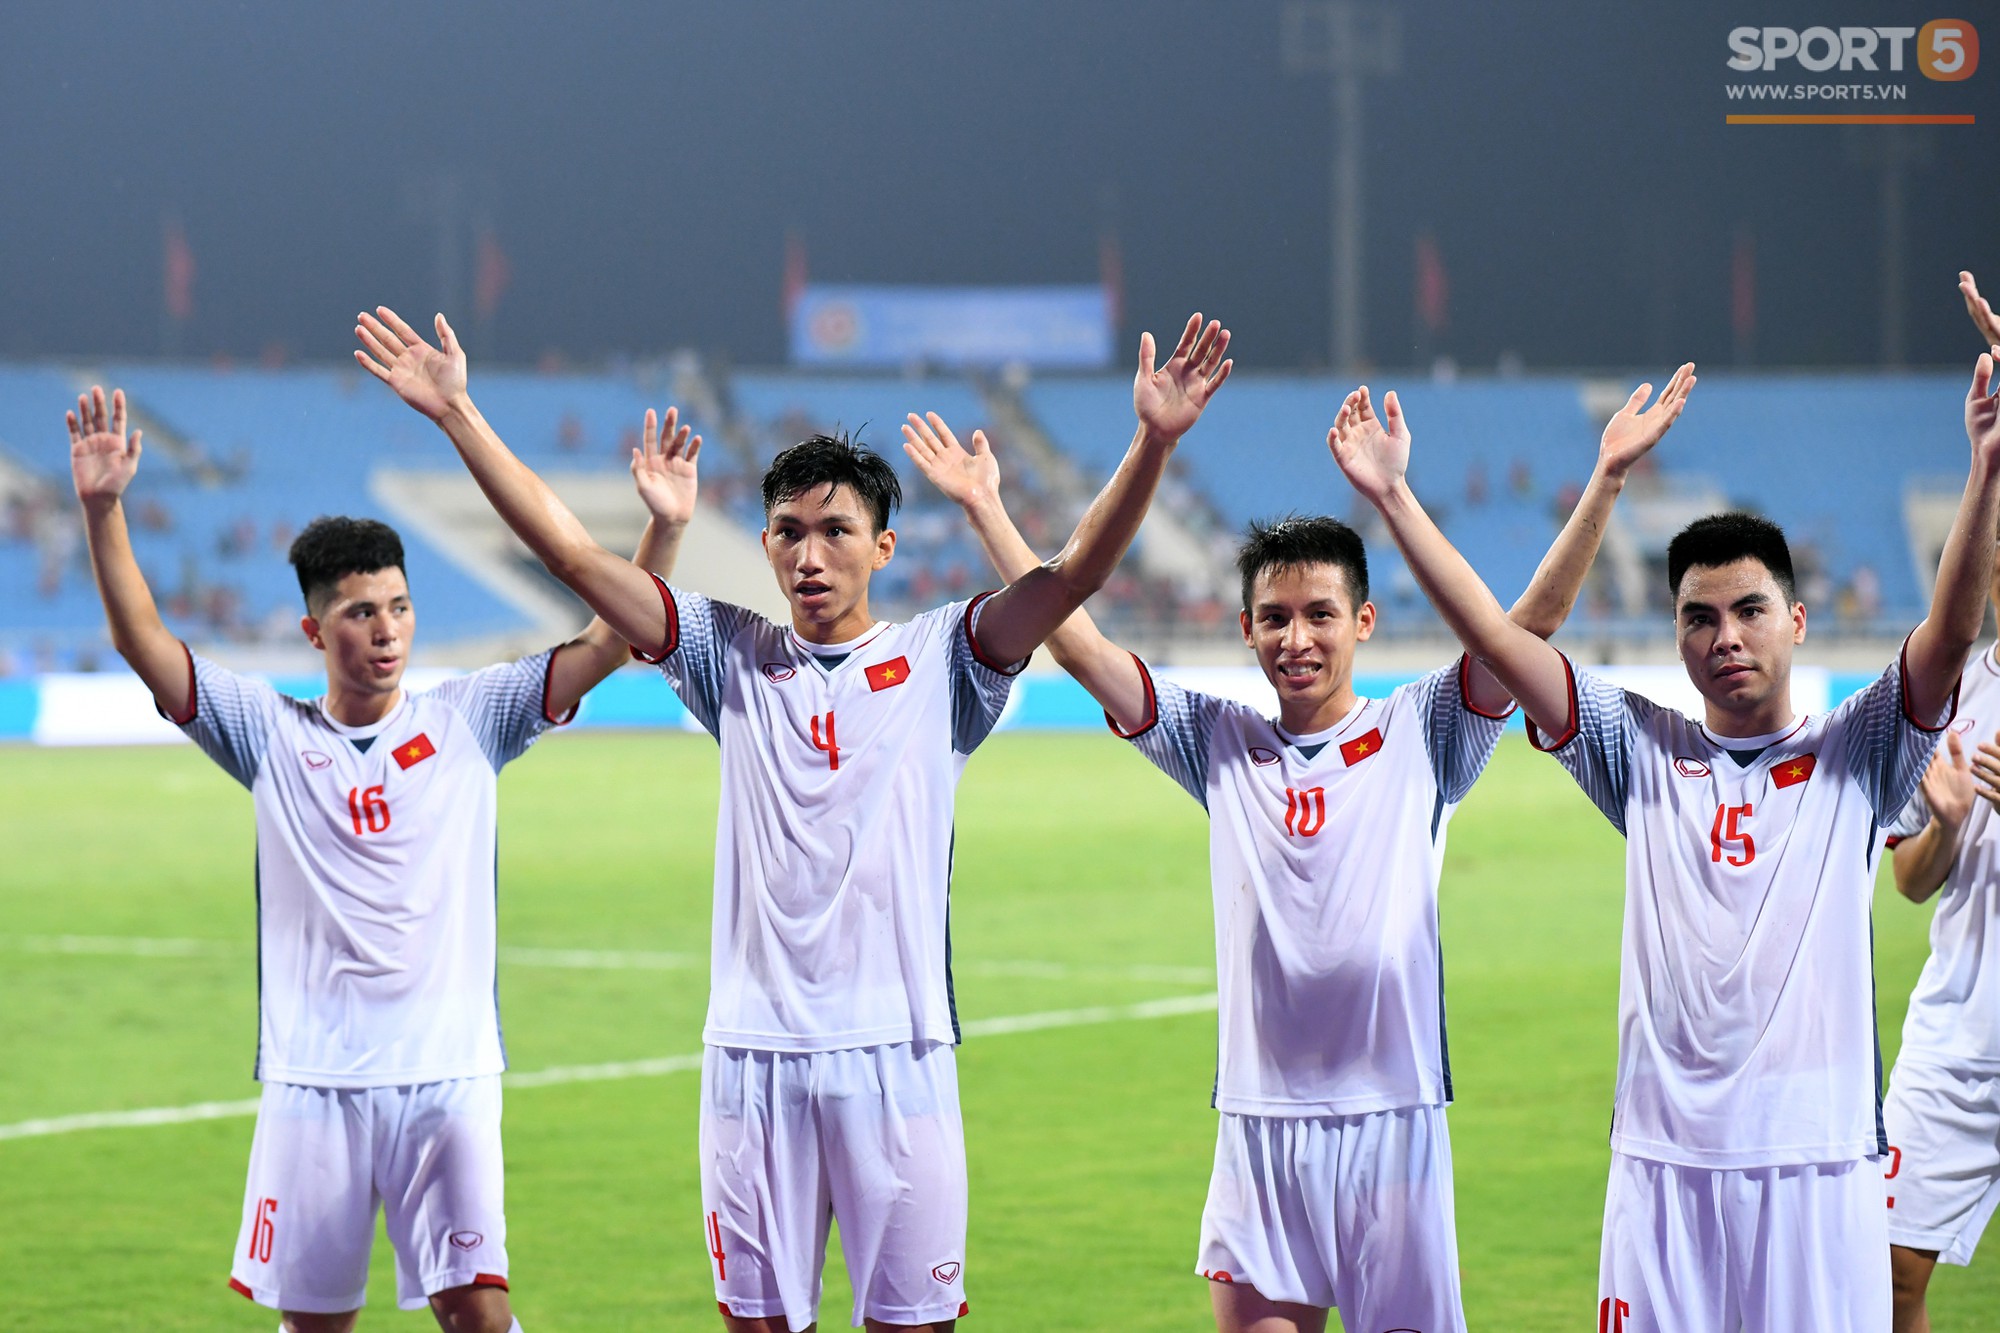 Cầu thủ U23 Việt Nam cảm ơn khán giả sau khi vô địch sớm Cup Tứ Hùng - Ảnh 1.